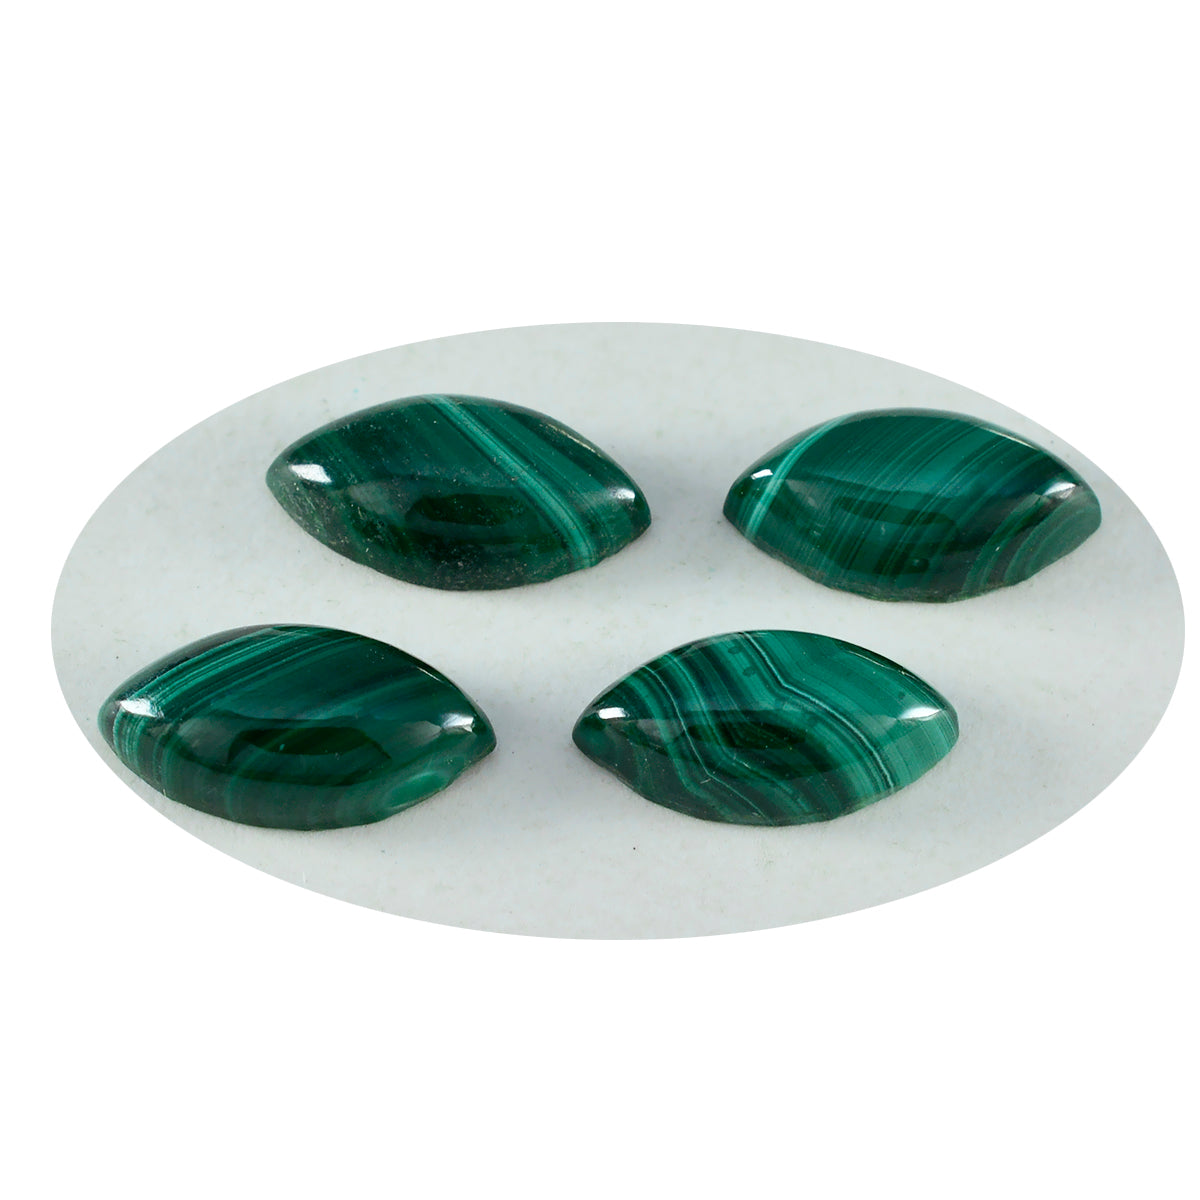 riyogems 1 шт. зеленый малахит кабошон 10x20 мм форма маркиза фантастическое качество россыпь драгоценных камней